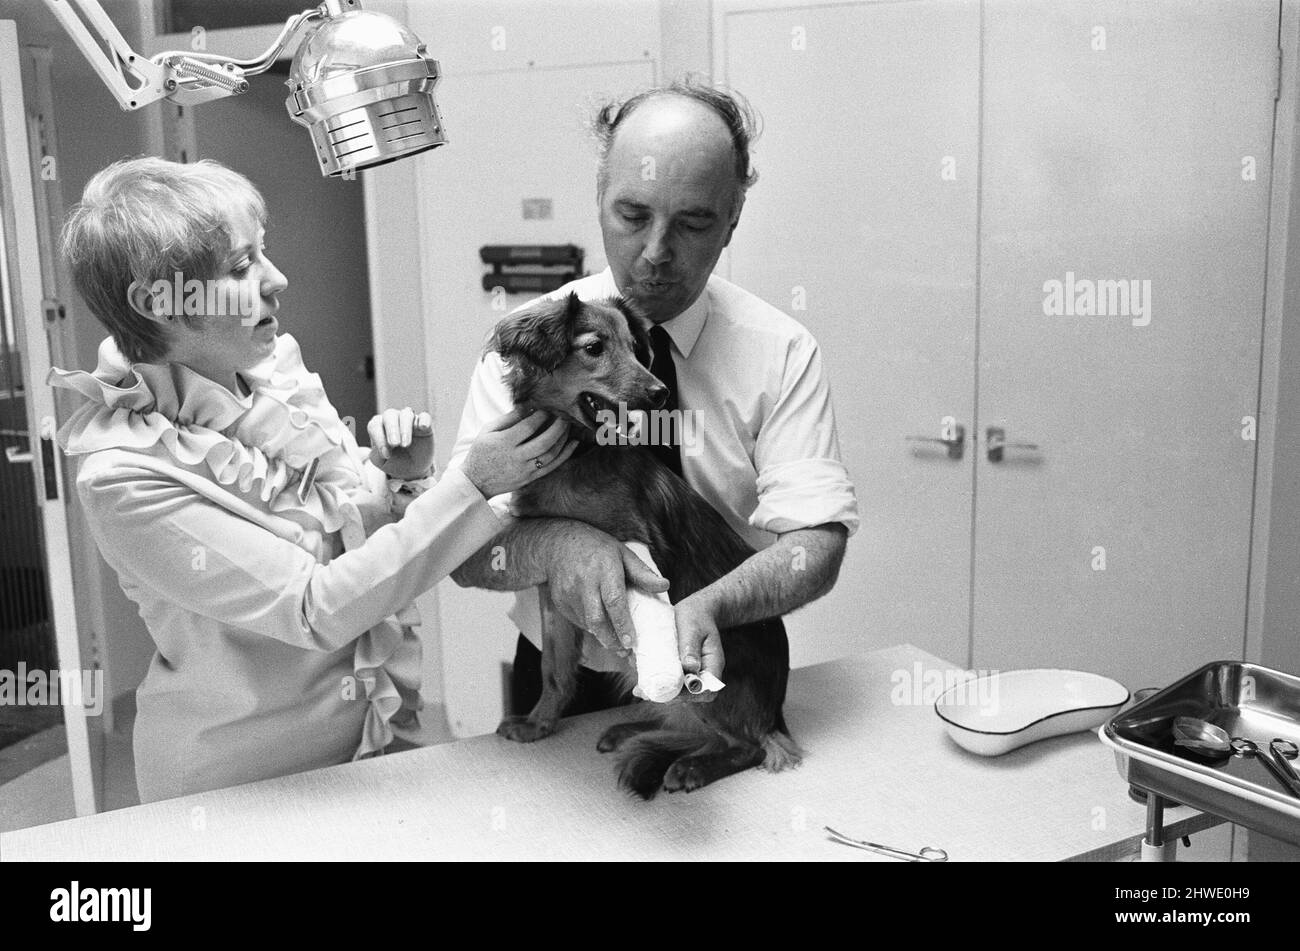 La signora Cindy Bell ha visto qui aiutare il veterinario Robert White durante l'apertura di una nuova ala da parte della duchessa di Beaufort 22nd giugno 1970. Foto Stock